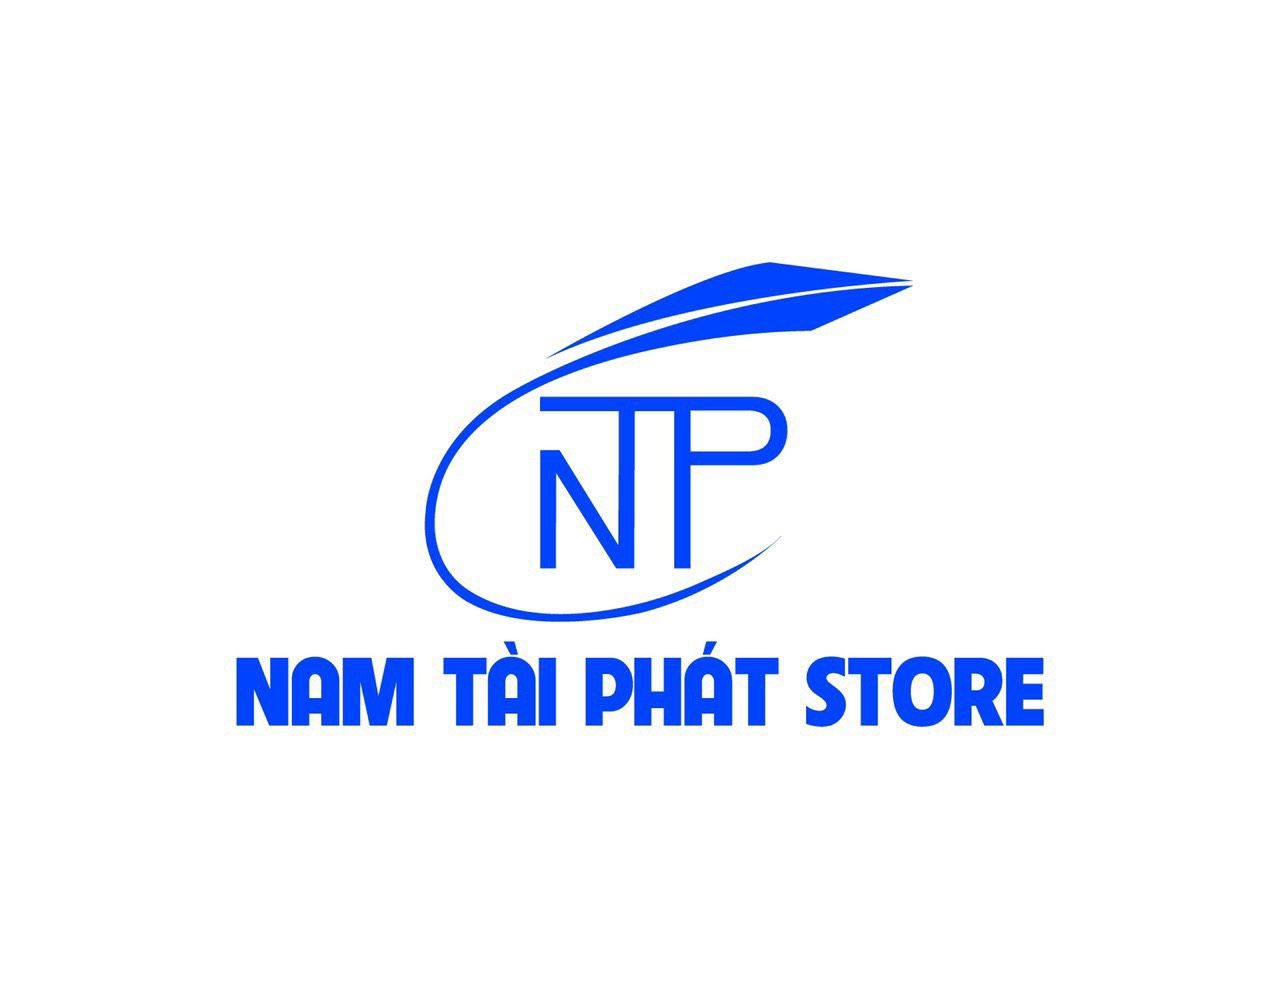 Nam Tài Phát FC